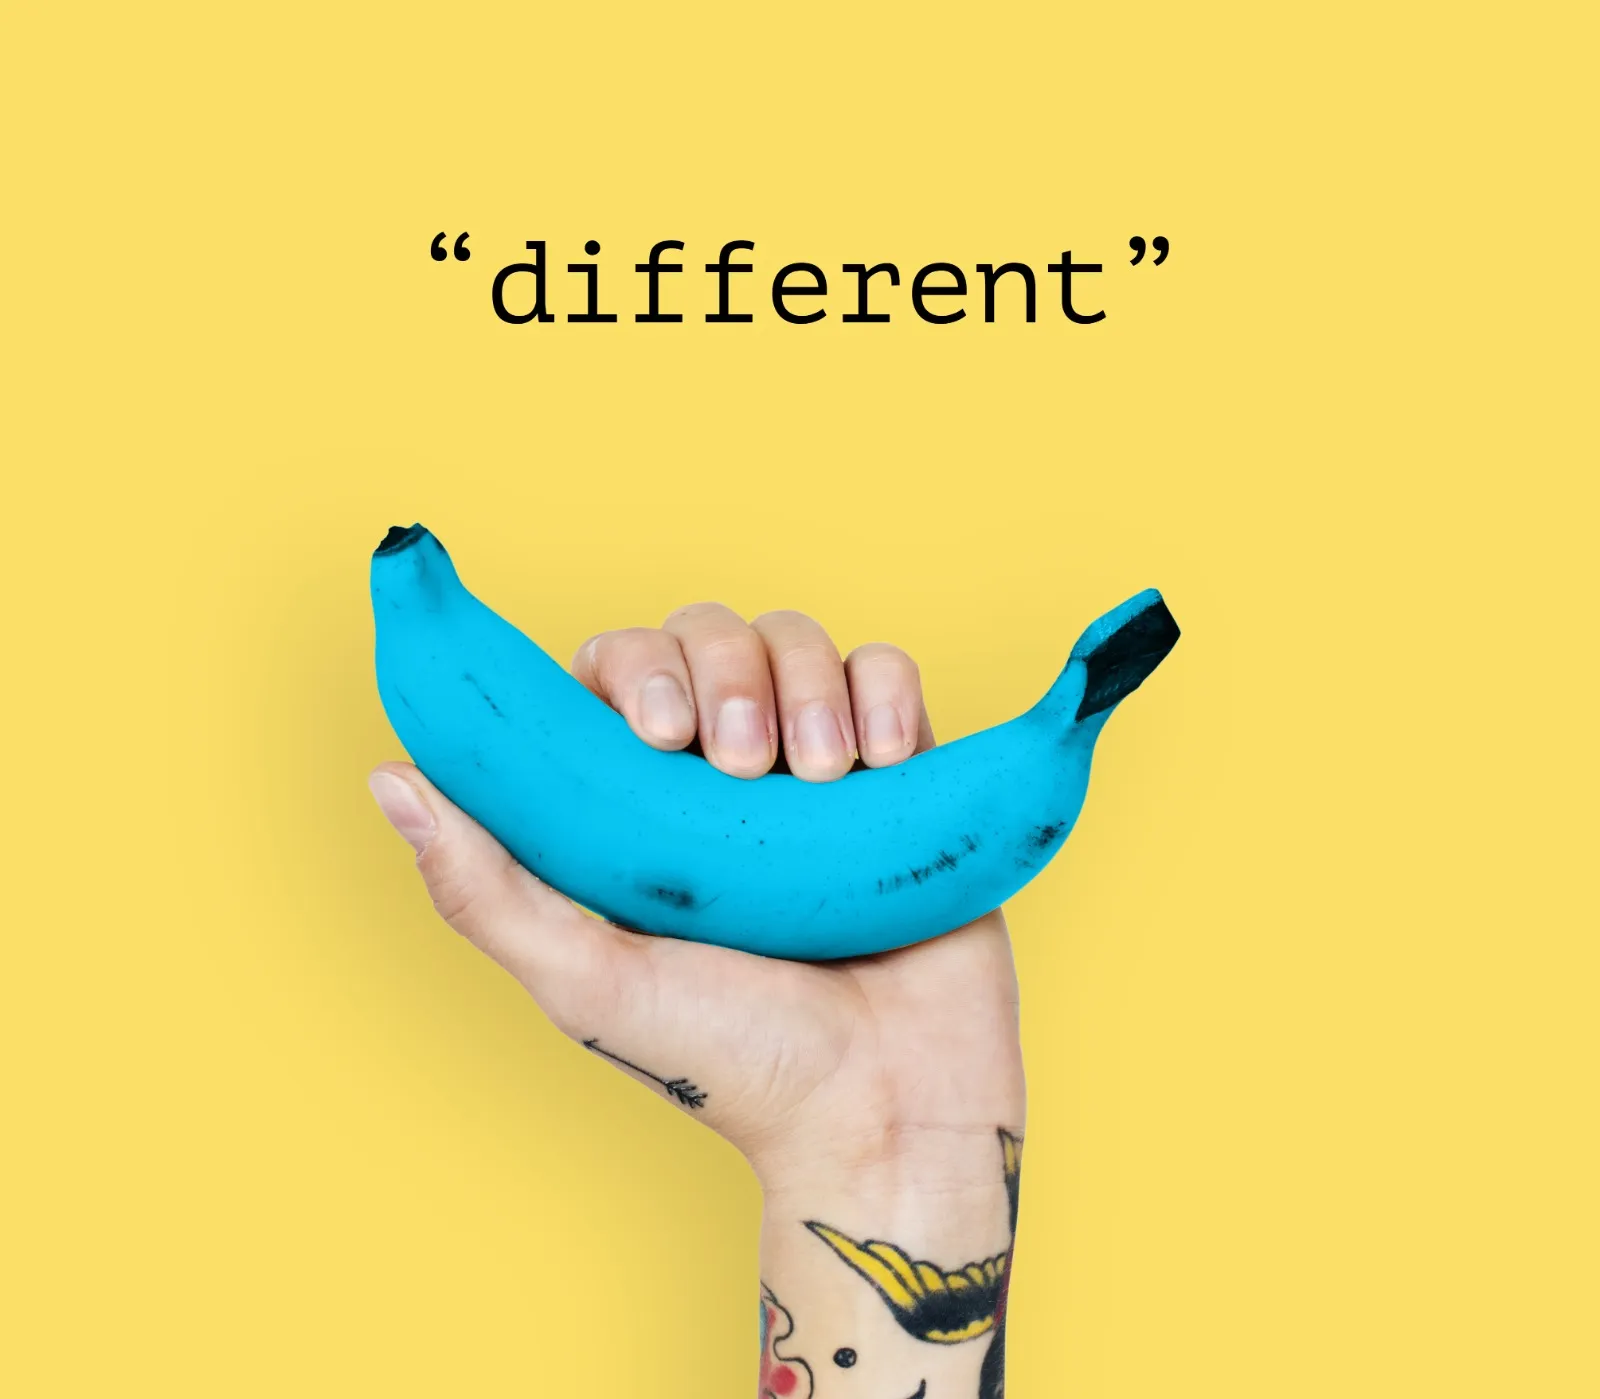 mano sosteniendo un plátano azul con la palabra "different"